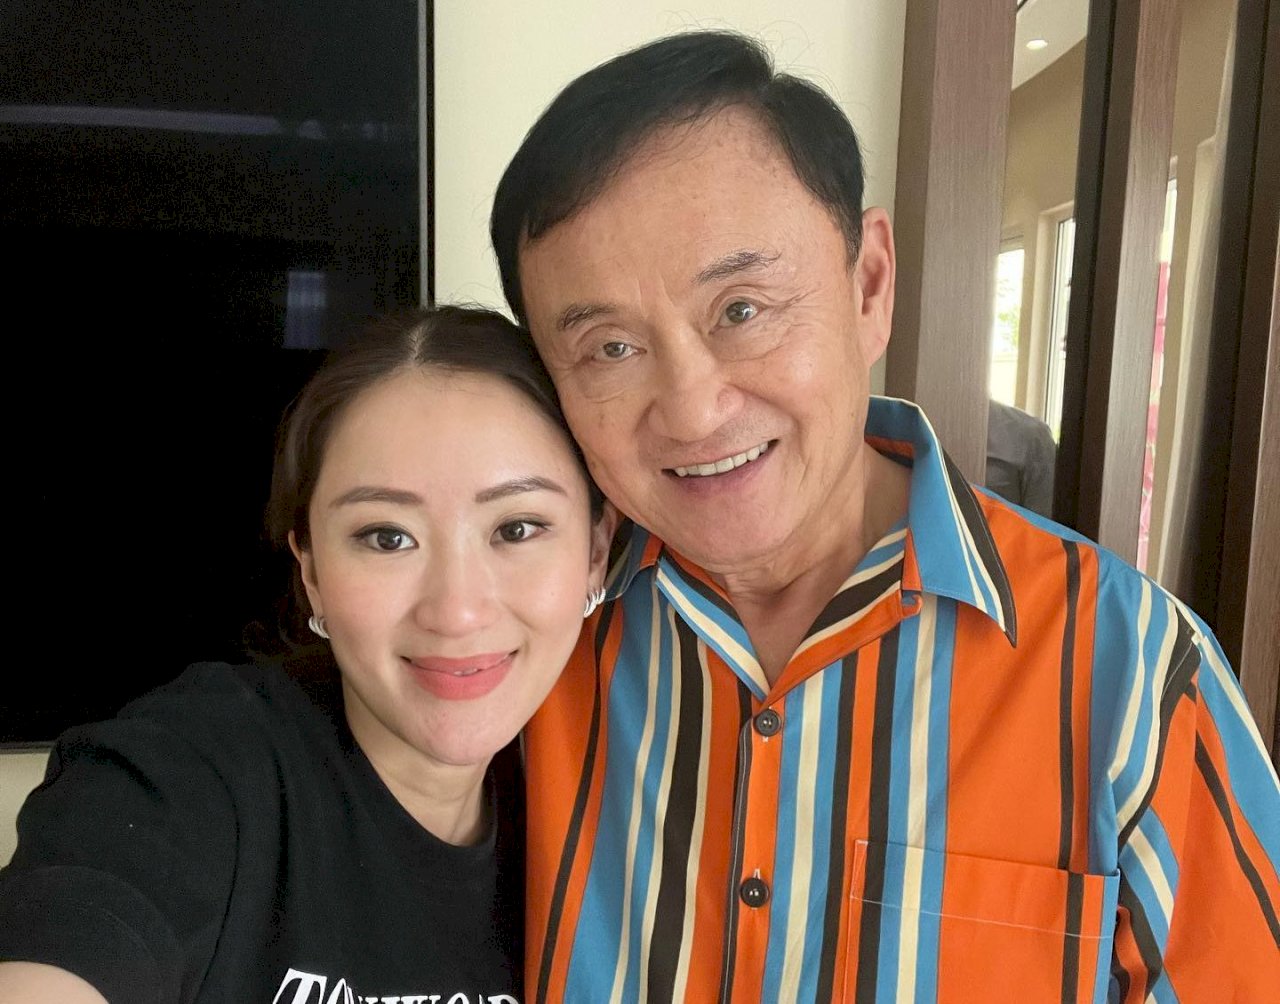 泰國流亡前總理願返國服刑 女兒支持父親決定